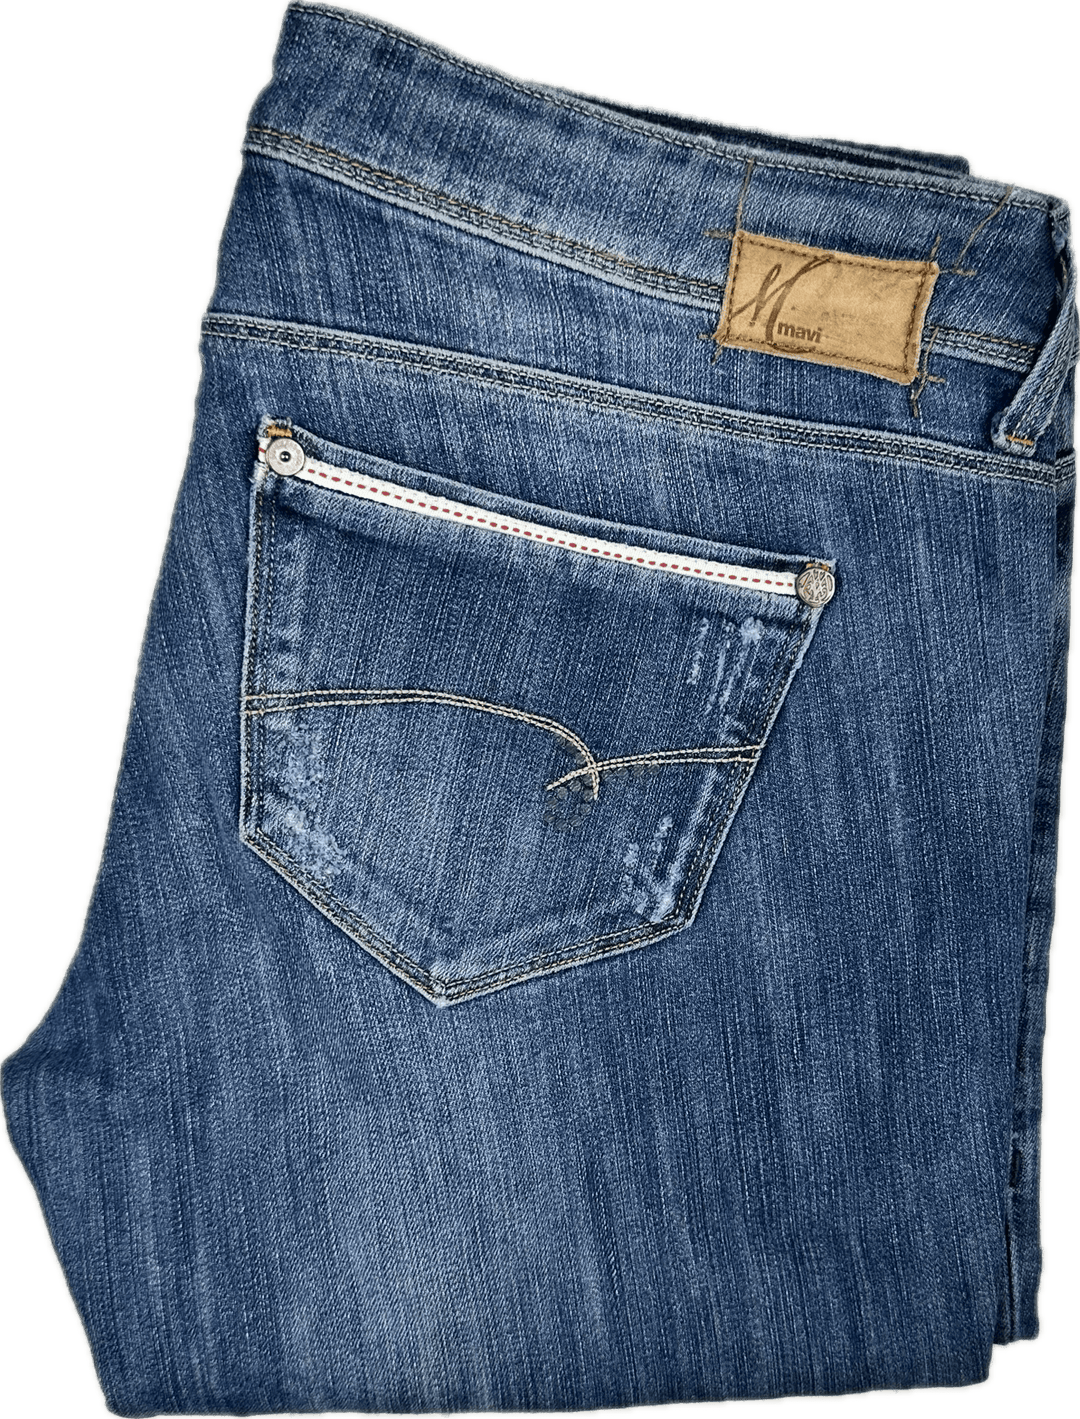 Mavi 'Lindy' Stretch Straight Leg Low Rise Jeans - Size 30 - Jean Pool